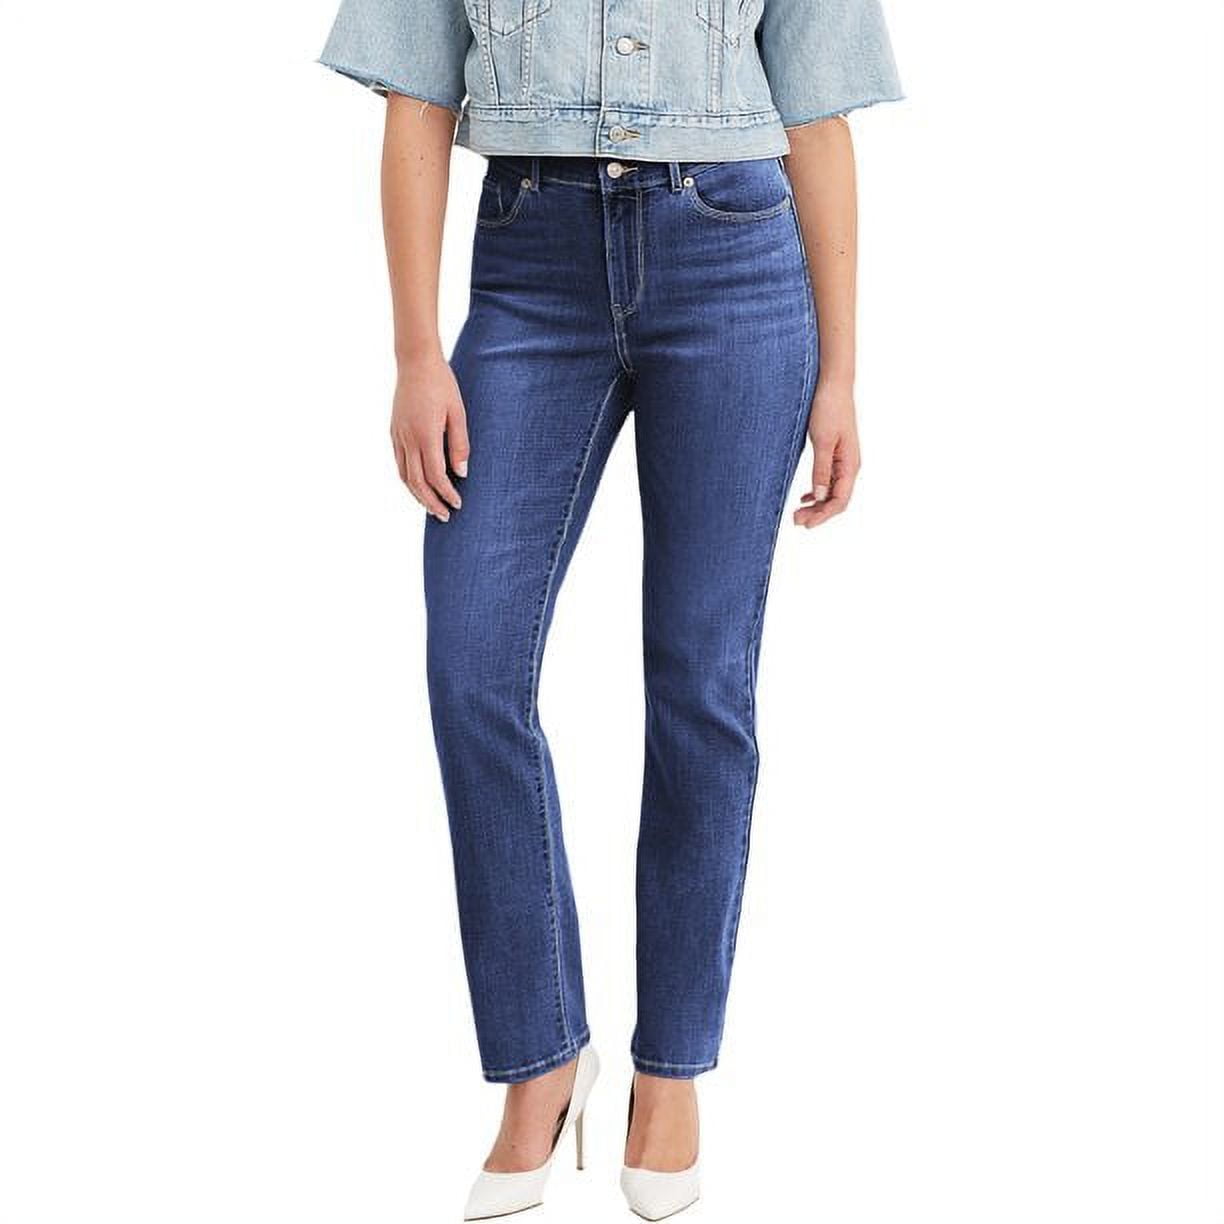 Levi’s Original Red Tab Women's Classic Straight Fit Jeans - Walmart.com